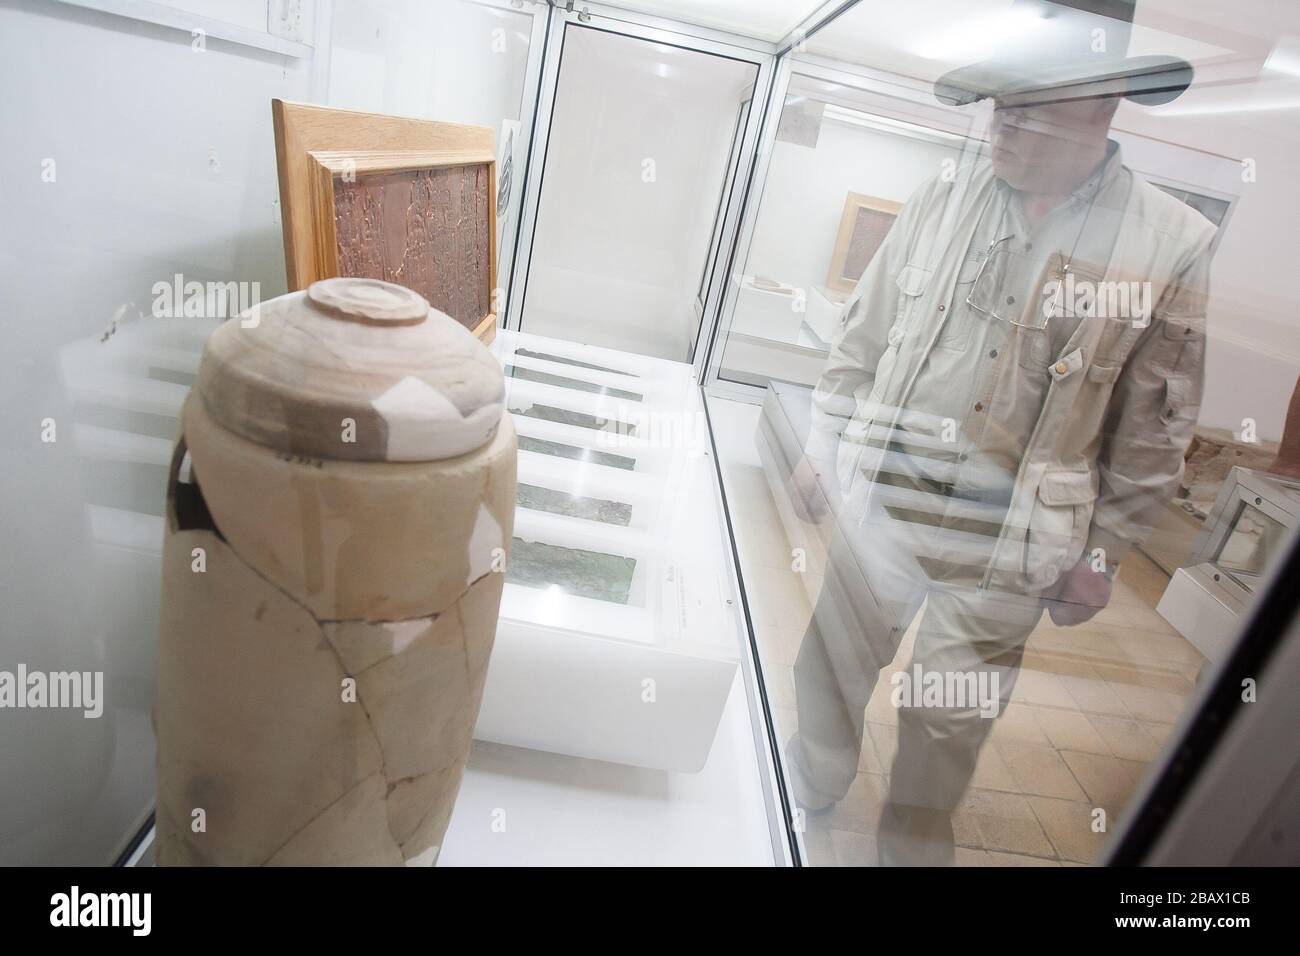 Amman, Jordanie, 3 mai 2009: Un homme observe le cuivre de la mer Morte Scroll et le bocal de défilement exposé dans le musée archéologique de Jordanie à Amman. Banque D'Images